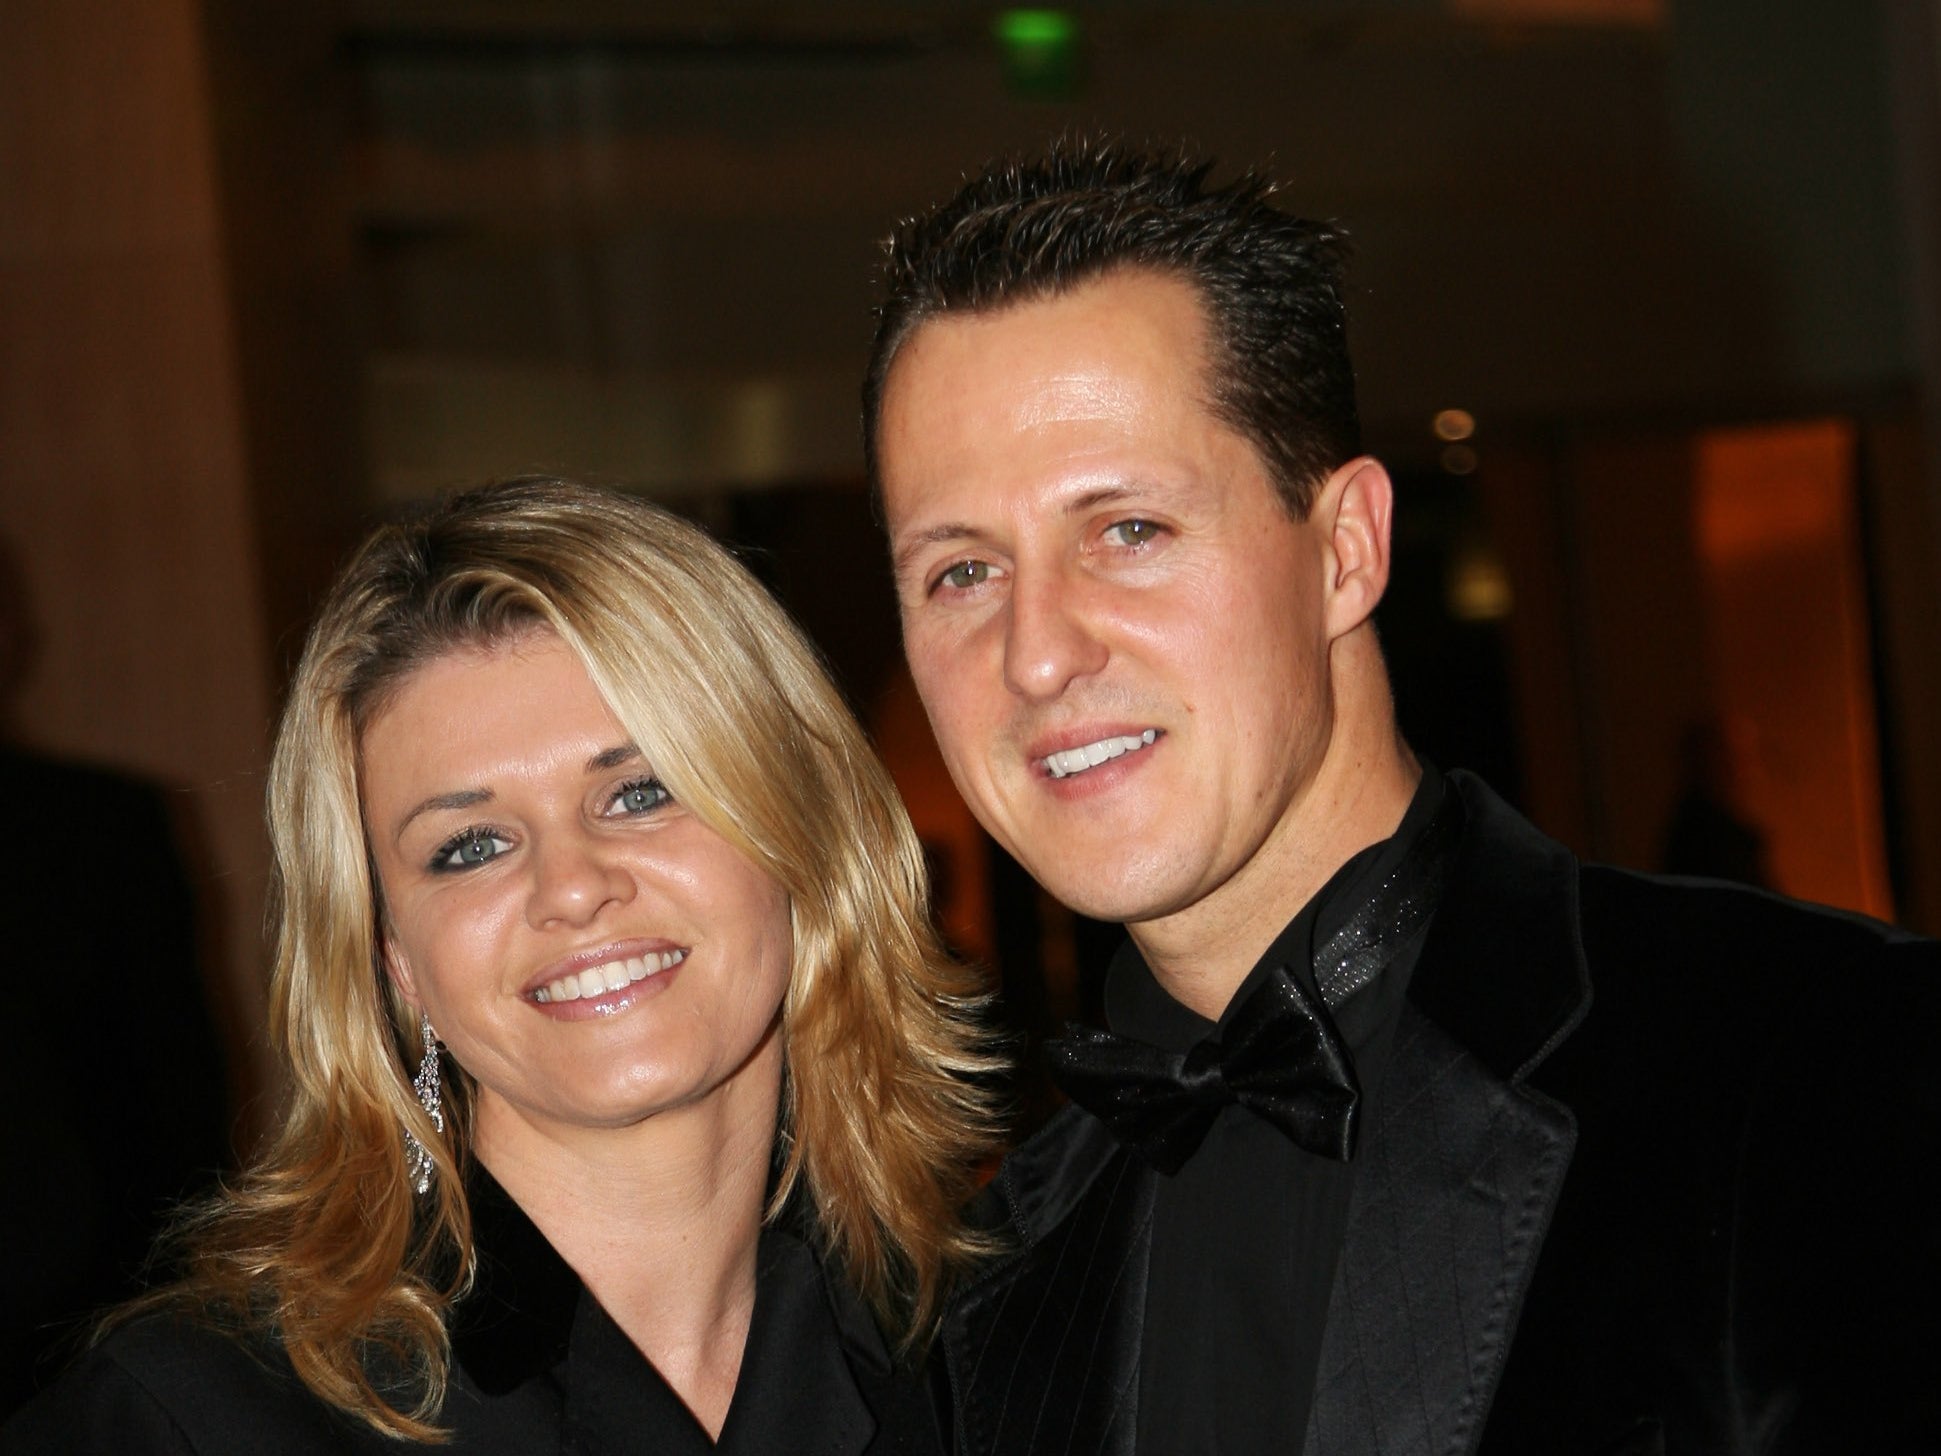 Michael Schumacher y su esposa Corinna en la ceremonia de entrega de premios de la Federación Internacional del Automóvil en 2006